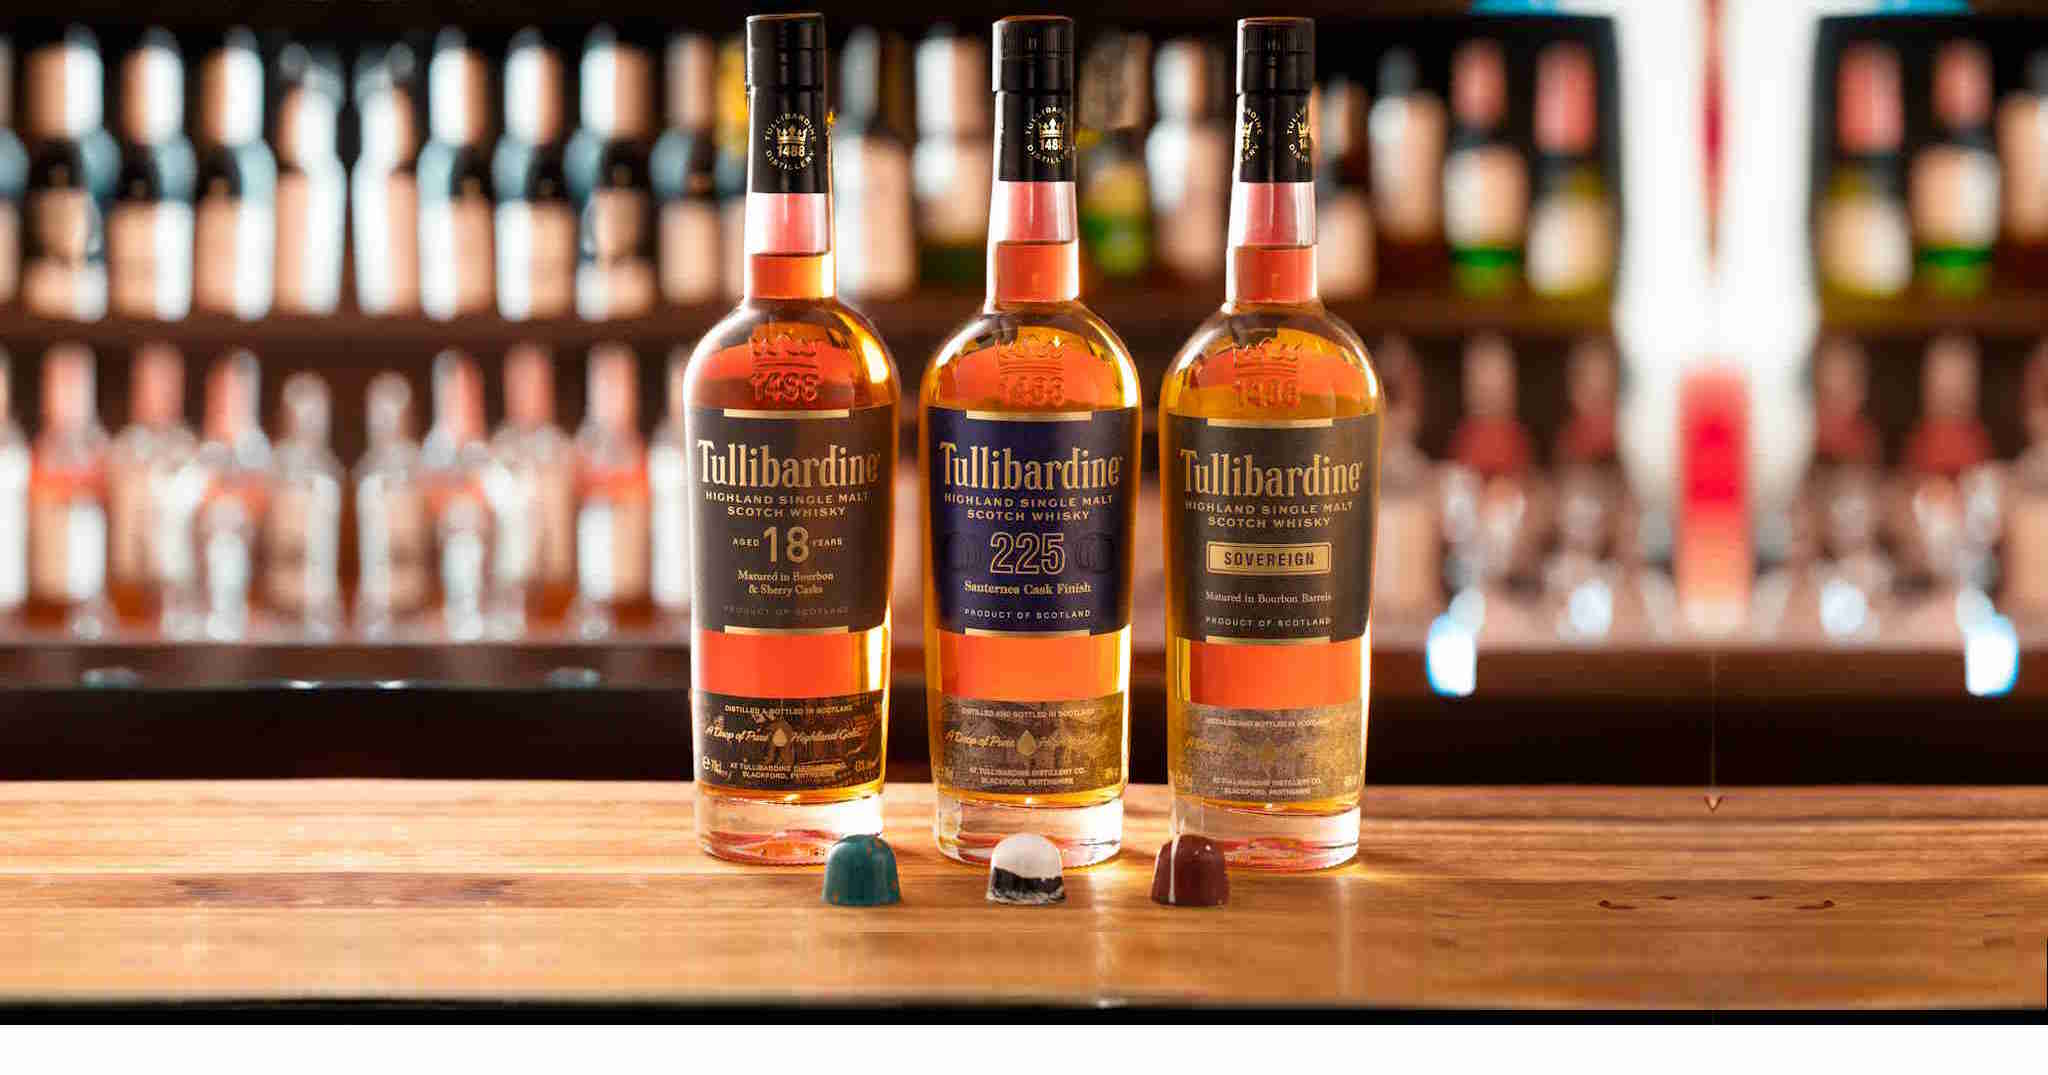 Tullibardine Whisky Distillery Explore the Range